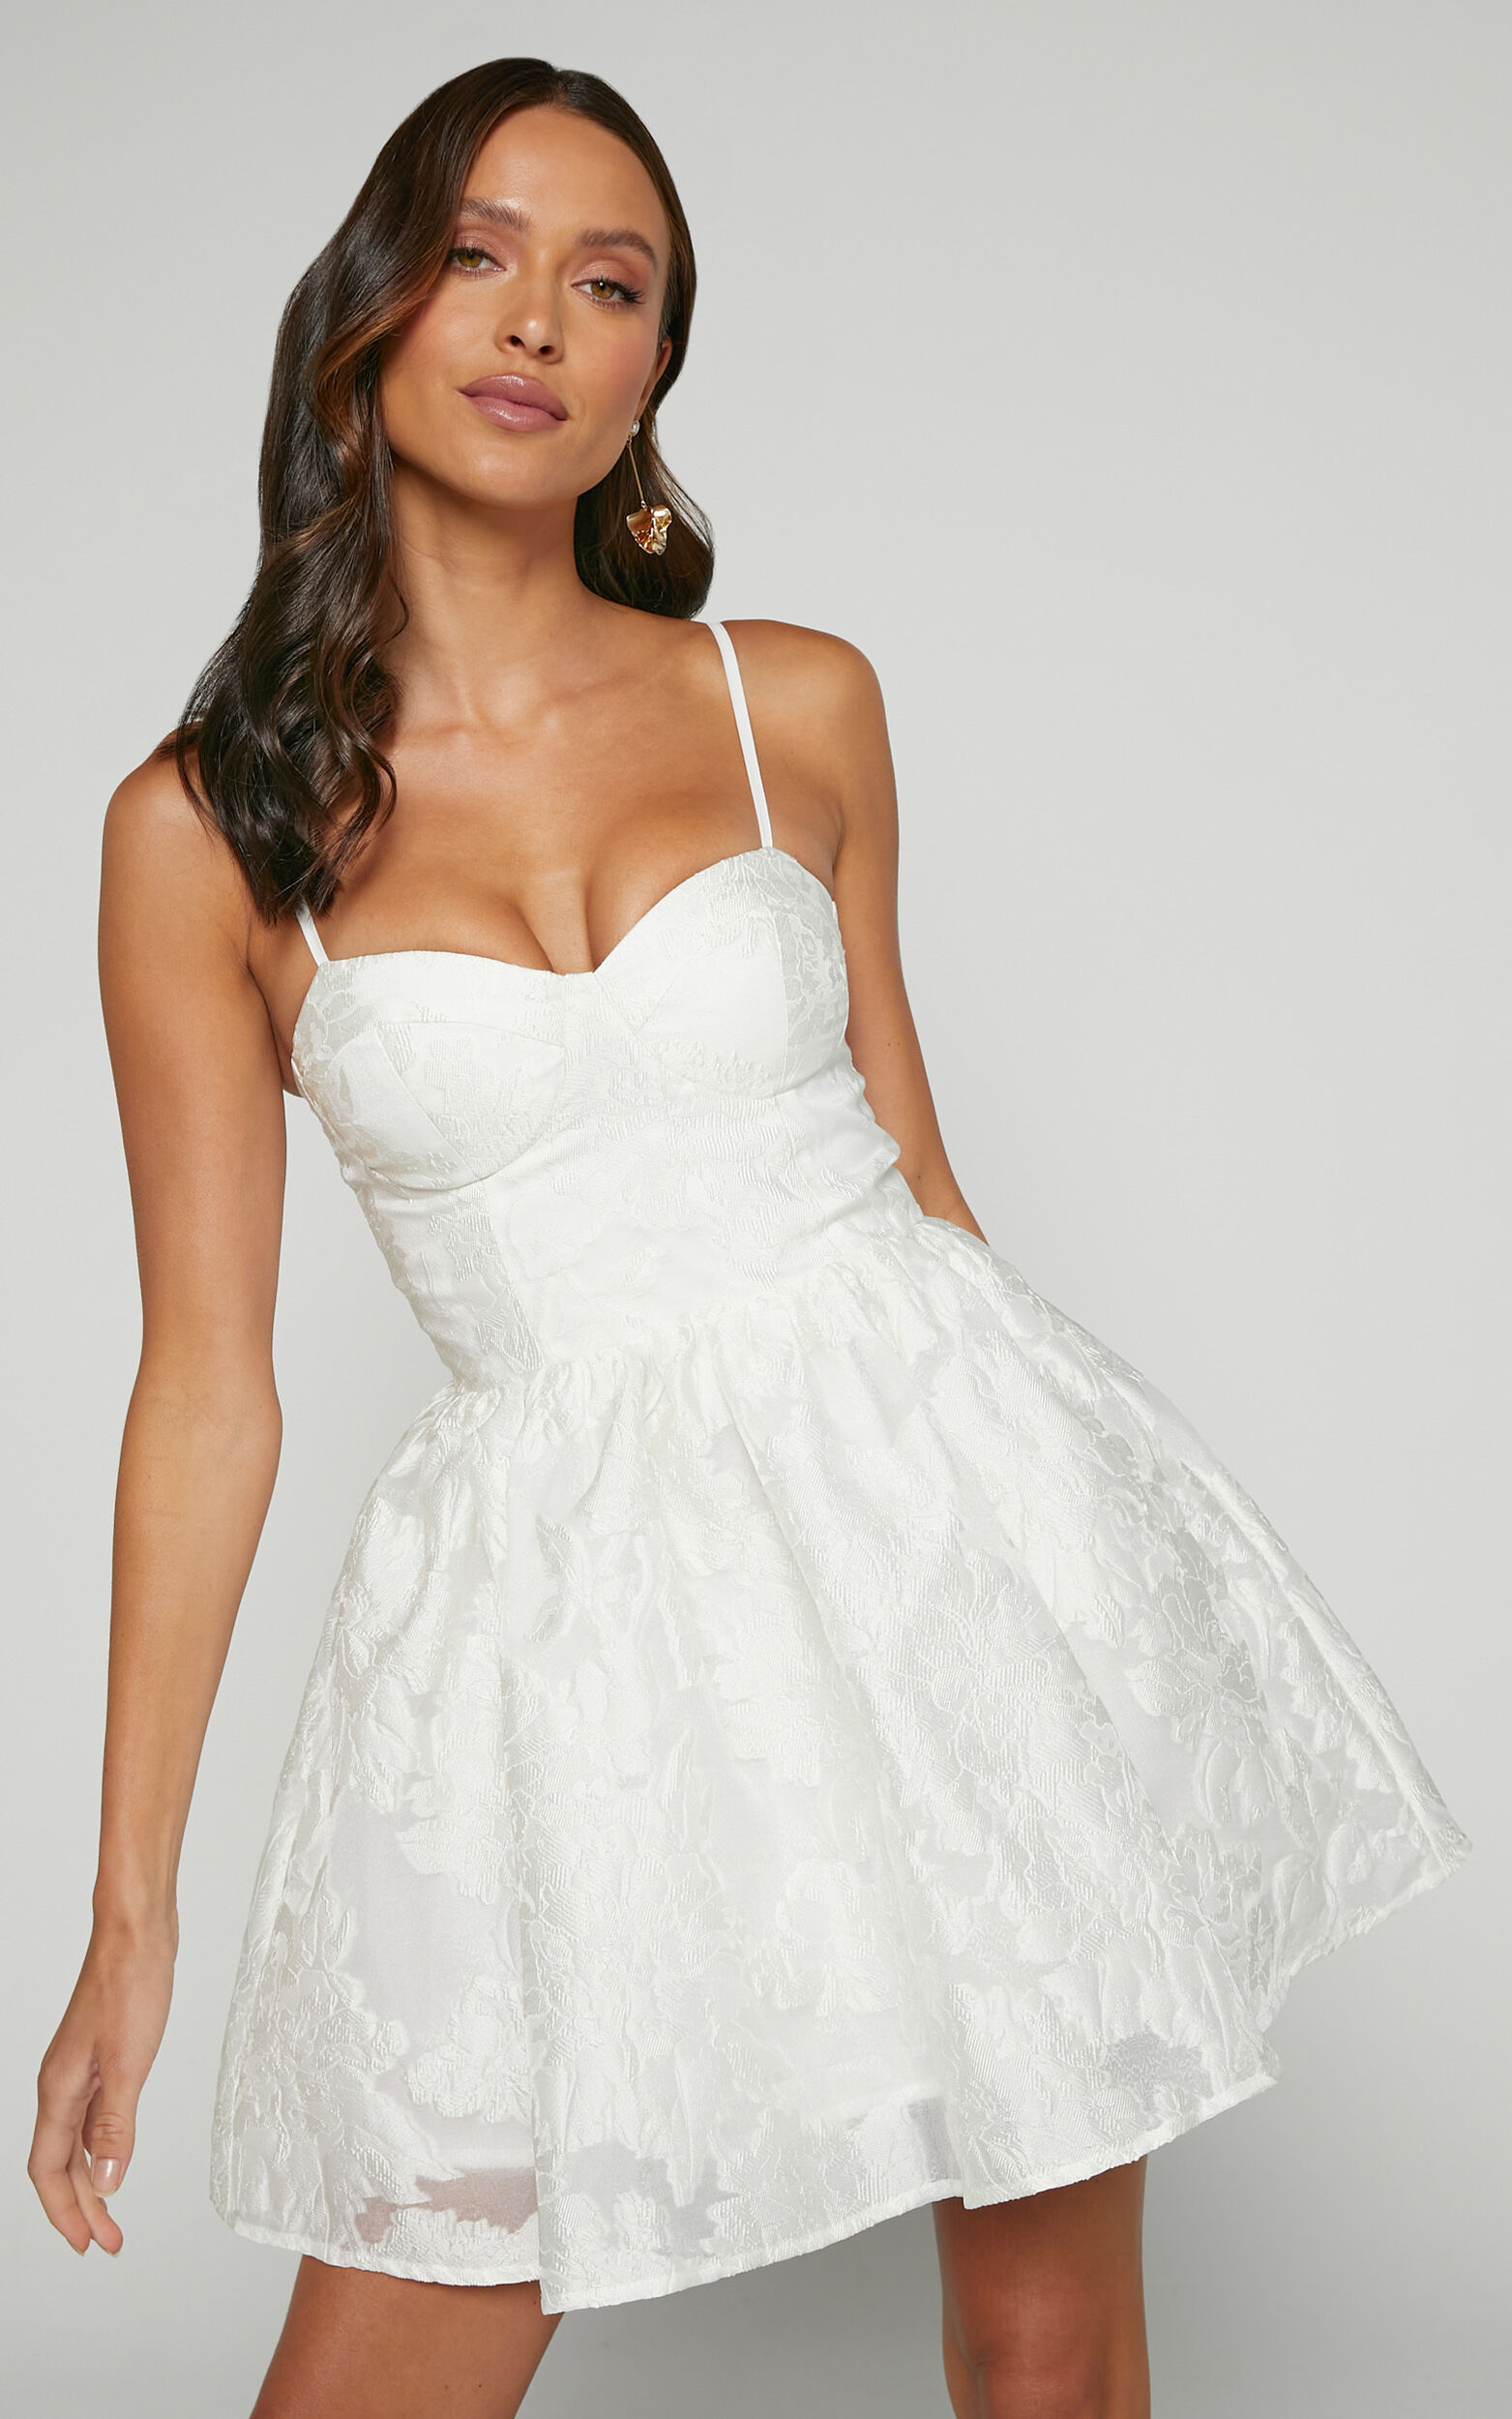 Brailey Mini Dress - Sweetheart Bustier Dress in White Jacquard - 04, WHT1